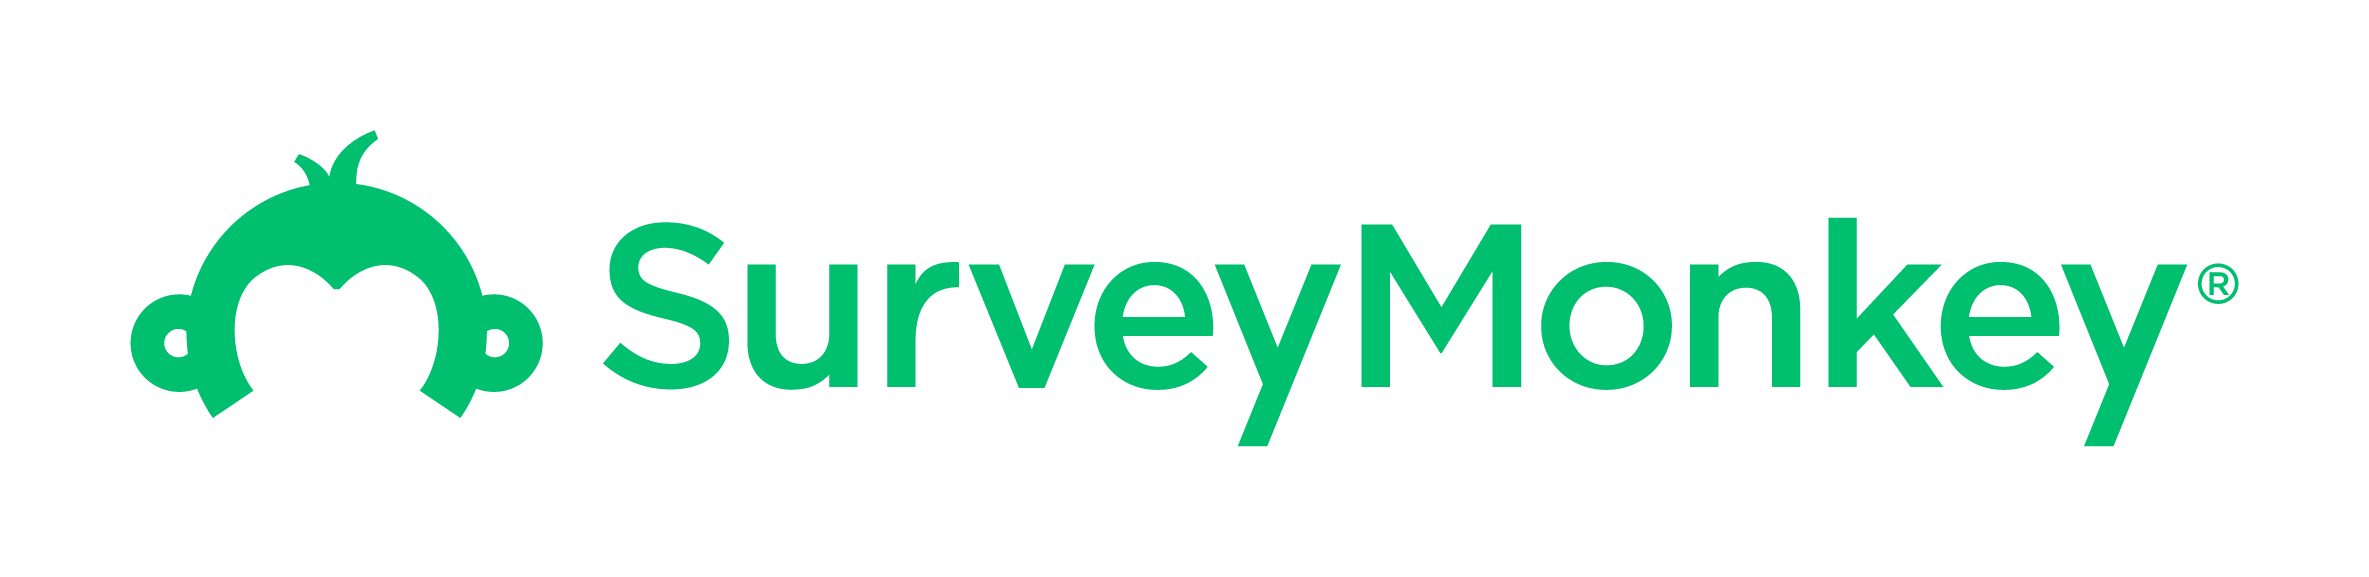 SurveyMonkey-Apr-30-2021-07-50-06-65-PM